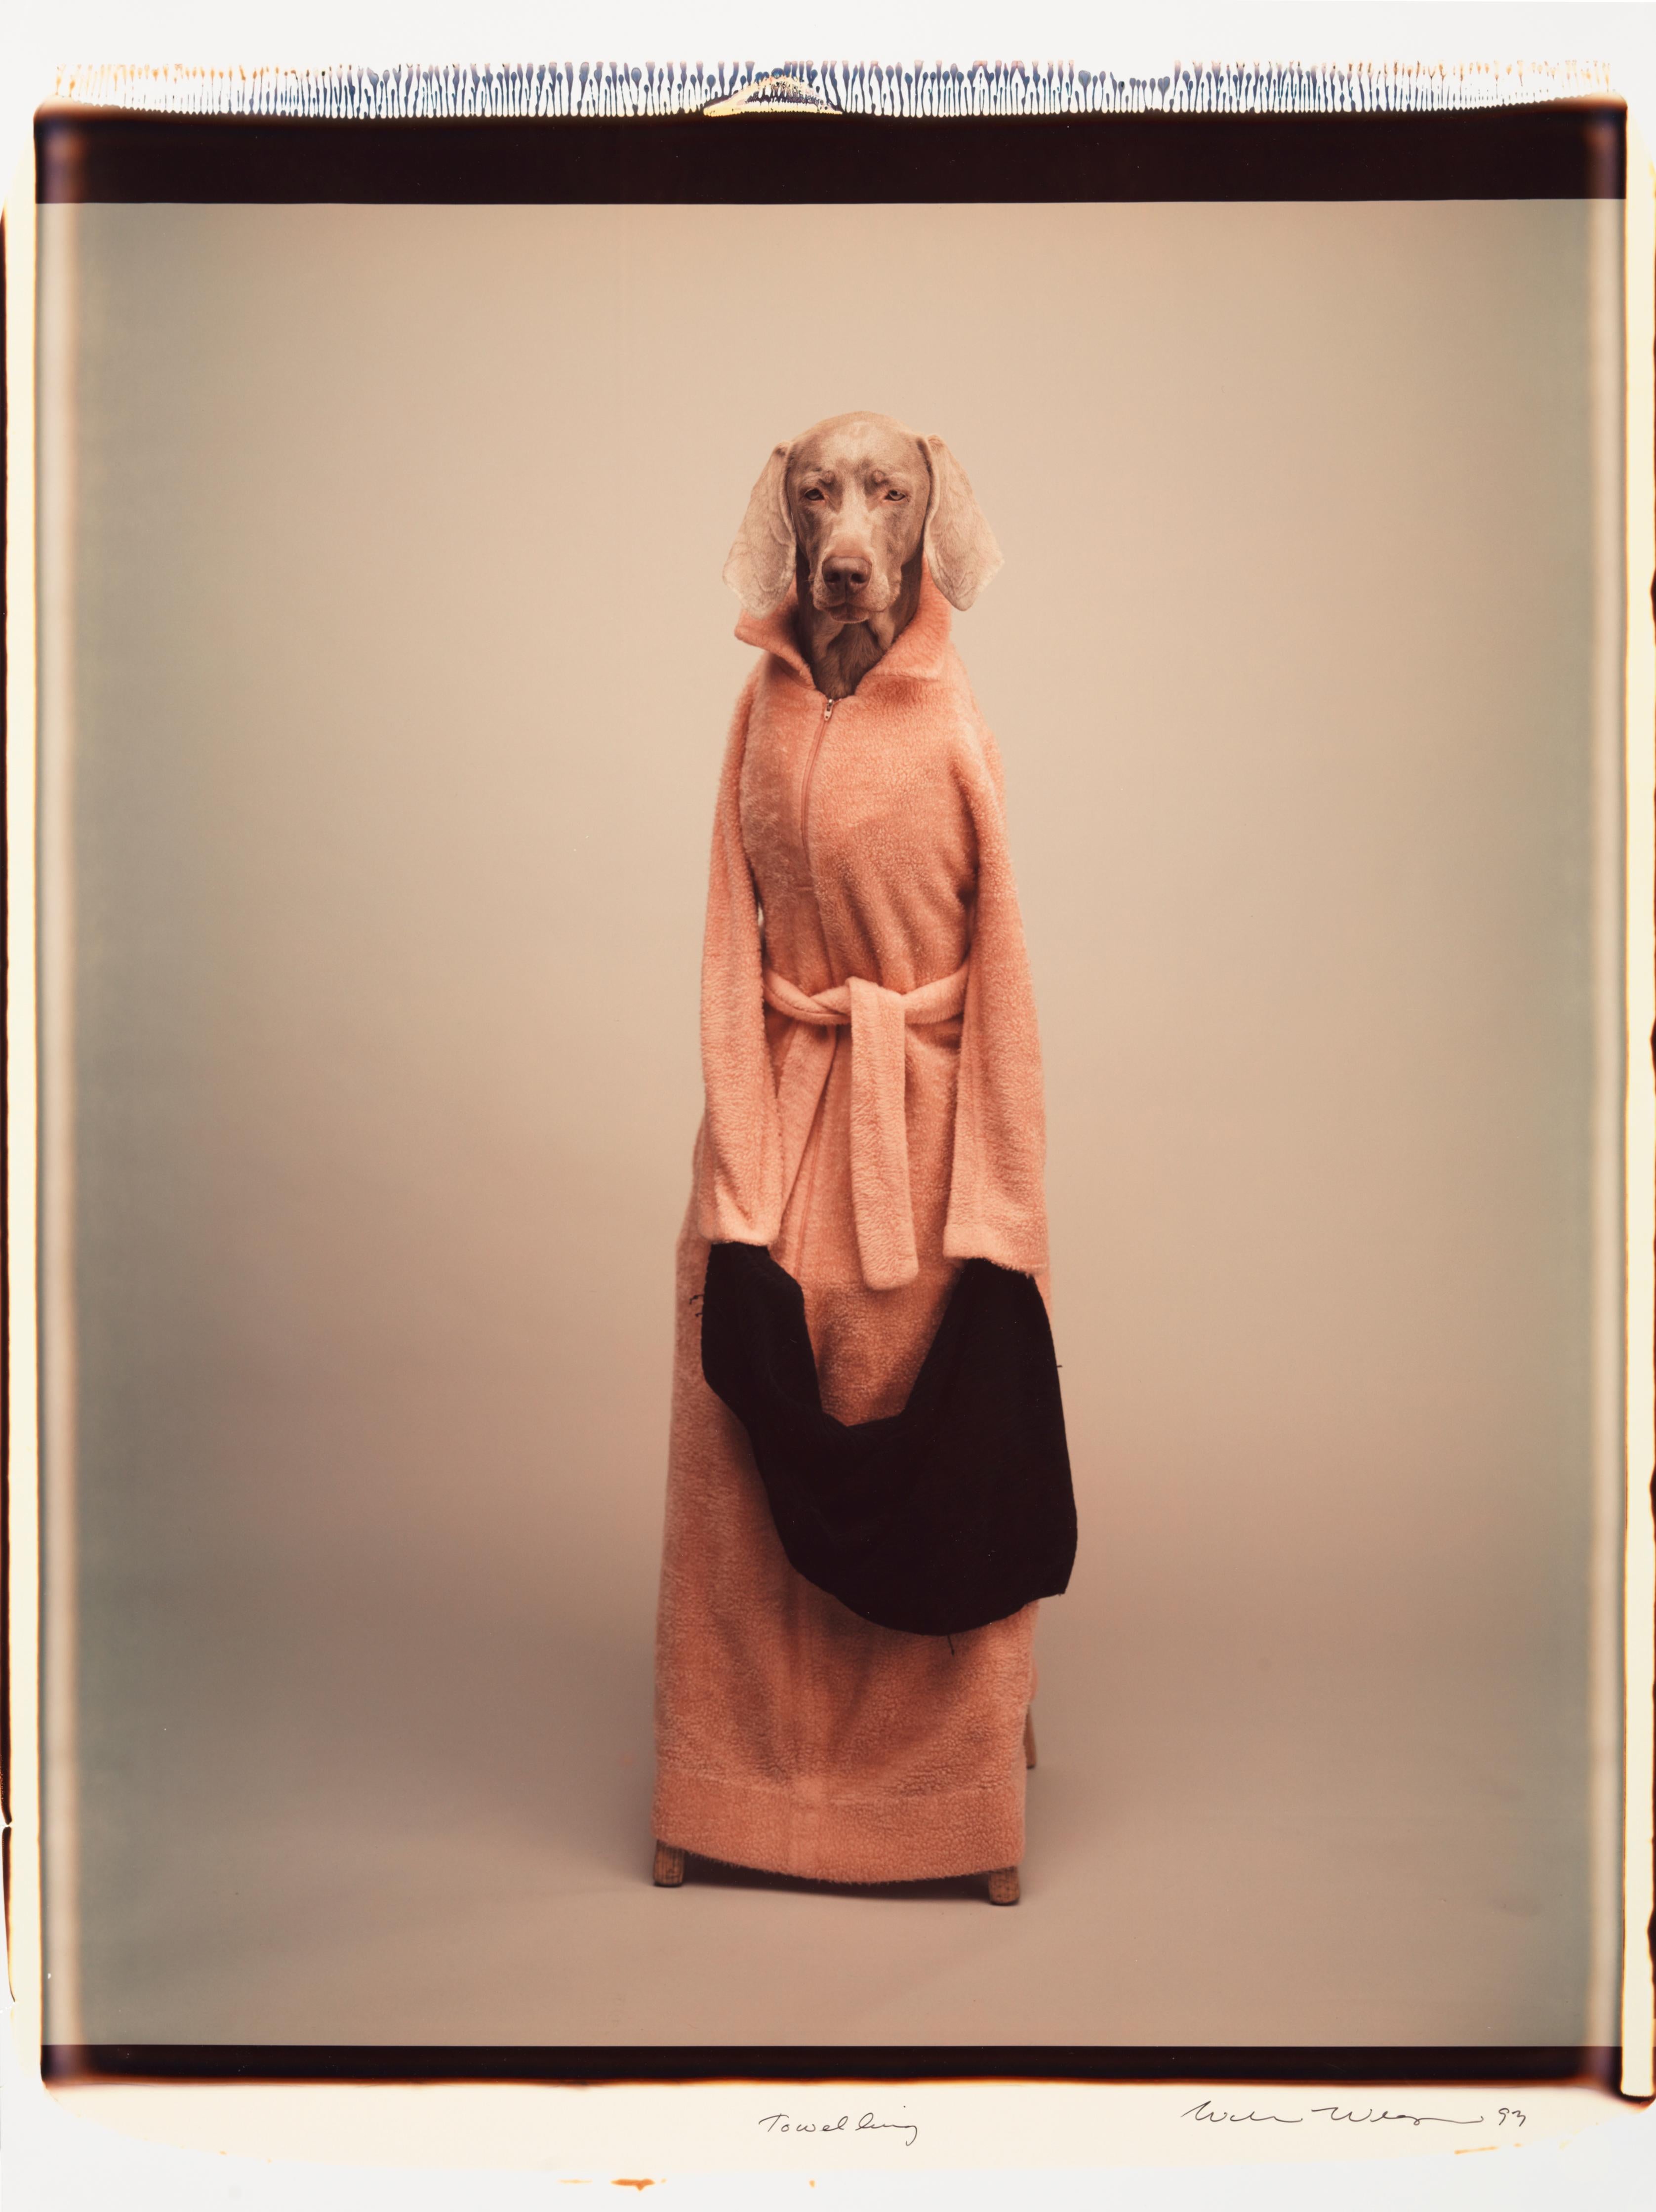 Eponge - William Wegman (Photographie couleur)
Signé et inscrit avec le titre
Tirage polaroïd couleur unique, imprimé en 1993
24 x 20 pouces

Les chiens, perruqués et parés de tenues et d'accessoires, présentent un large éventail de personnages